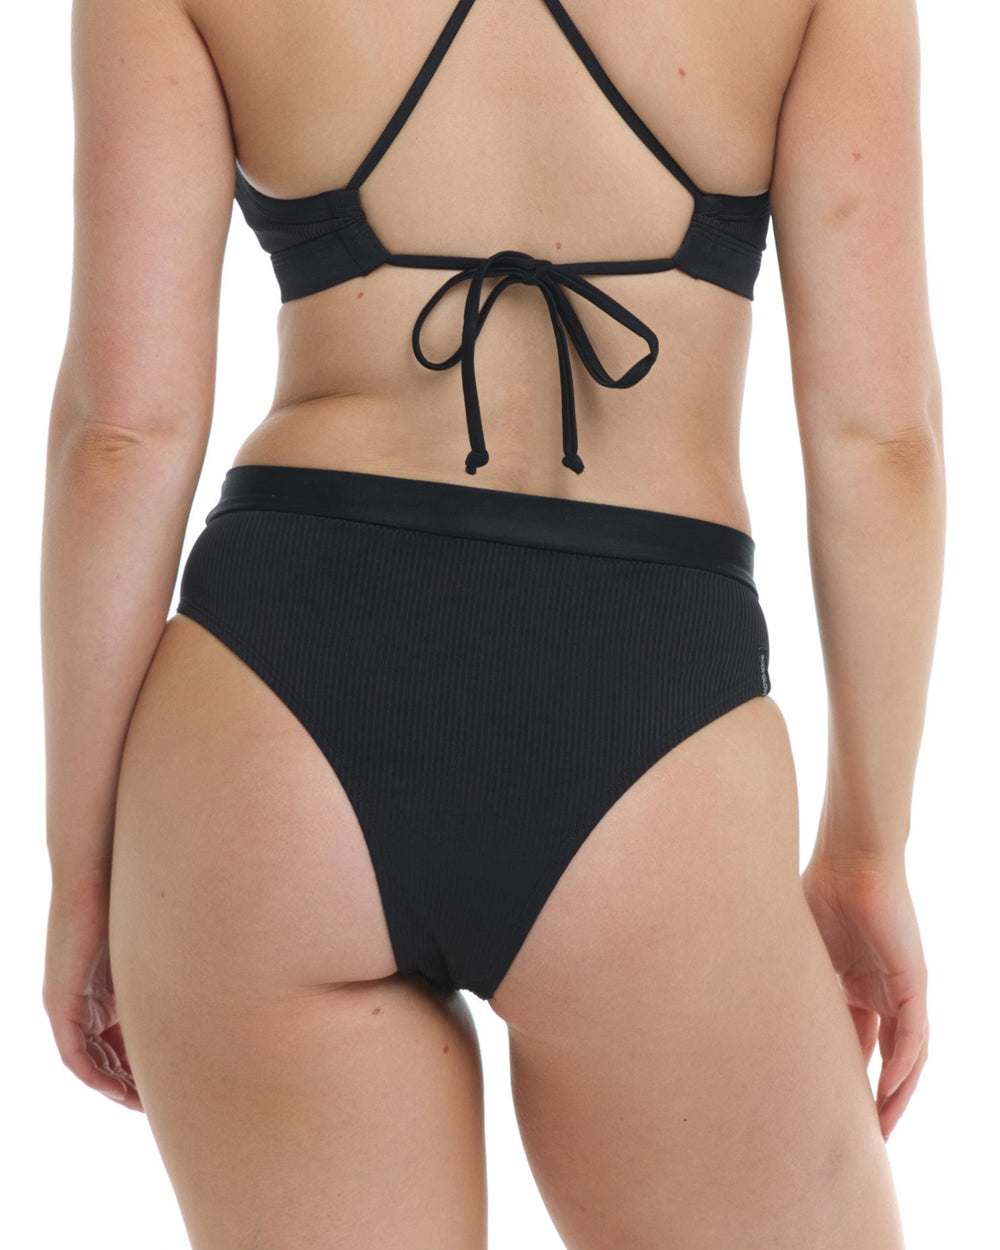 Ibiza Marlee High-Waist Bikini Bottom - Black - Sun Diego Boardshop